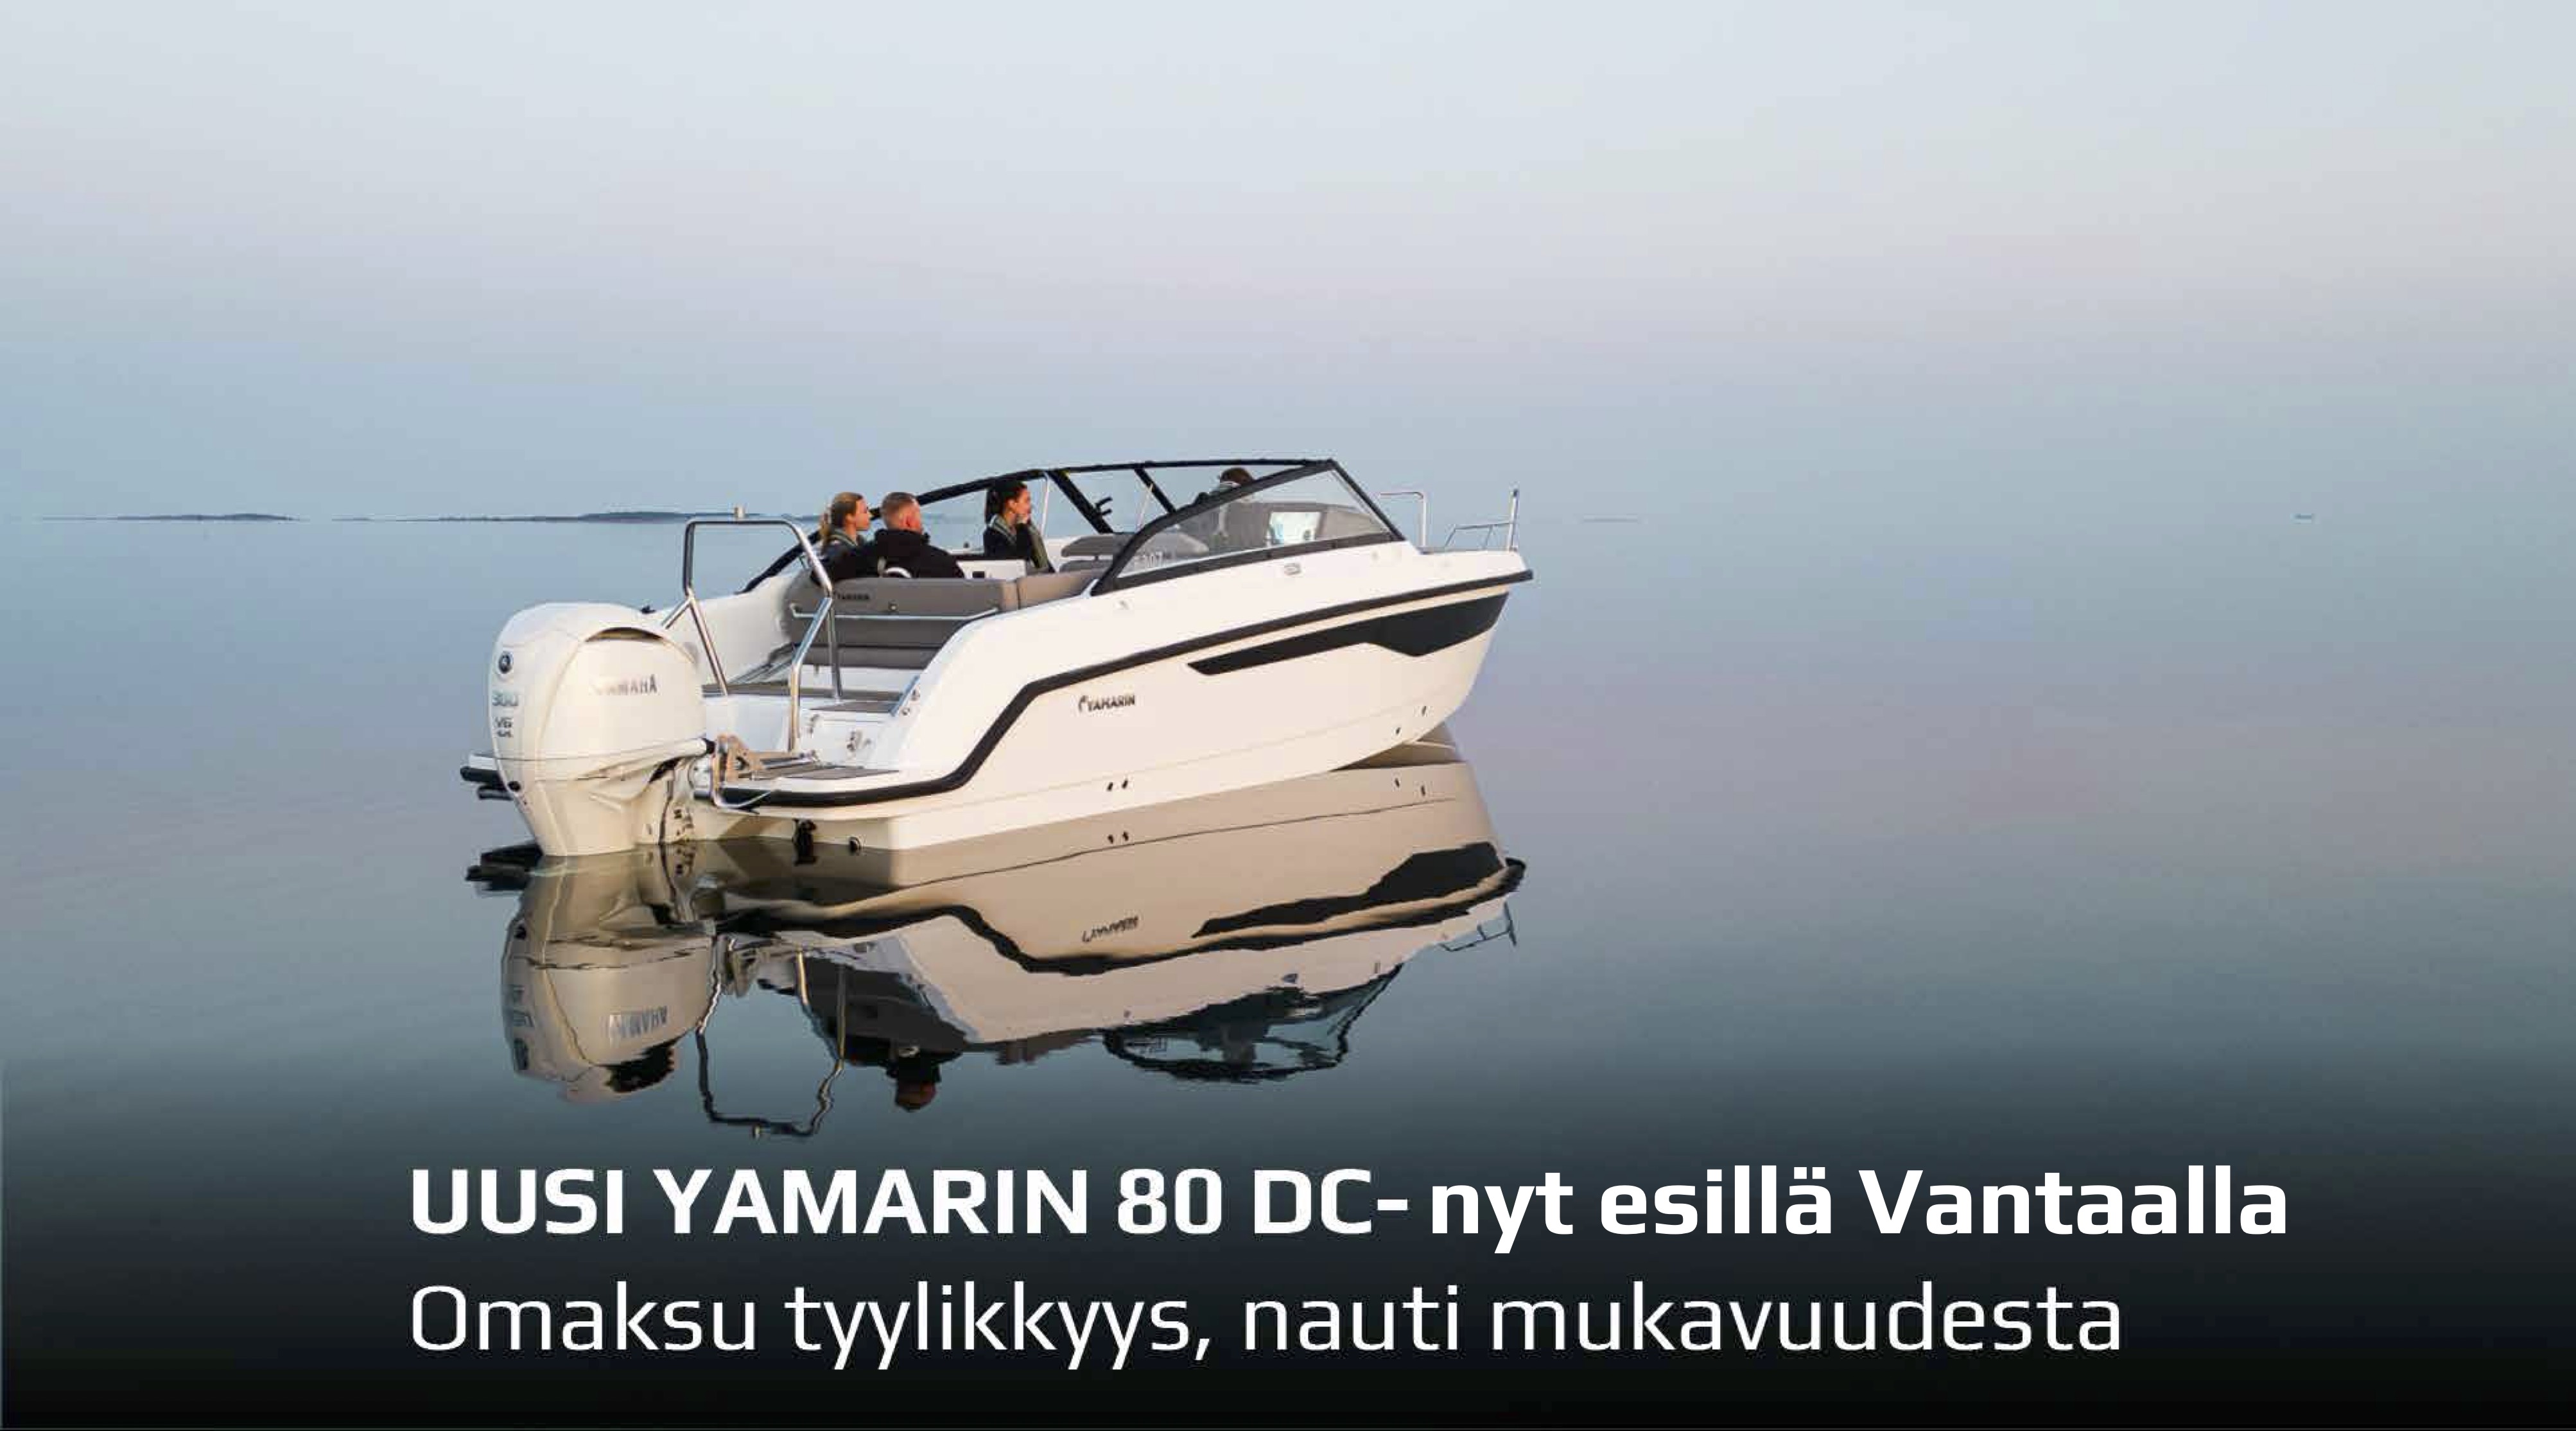 Uusi Yamarin 80 DC yhdistää pohjoismaisen käytännöllisyyden välimerelliseen veneilykulttuuriin. Tule tutustumaan Vantaalle!